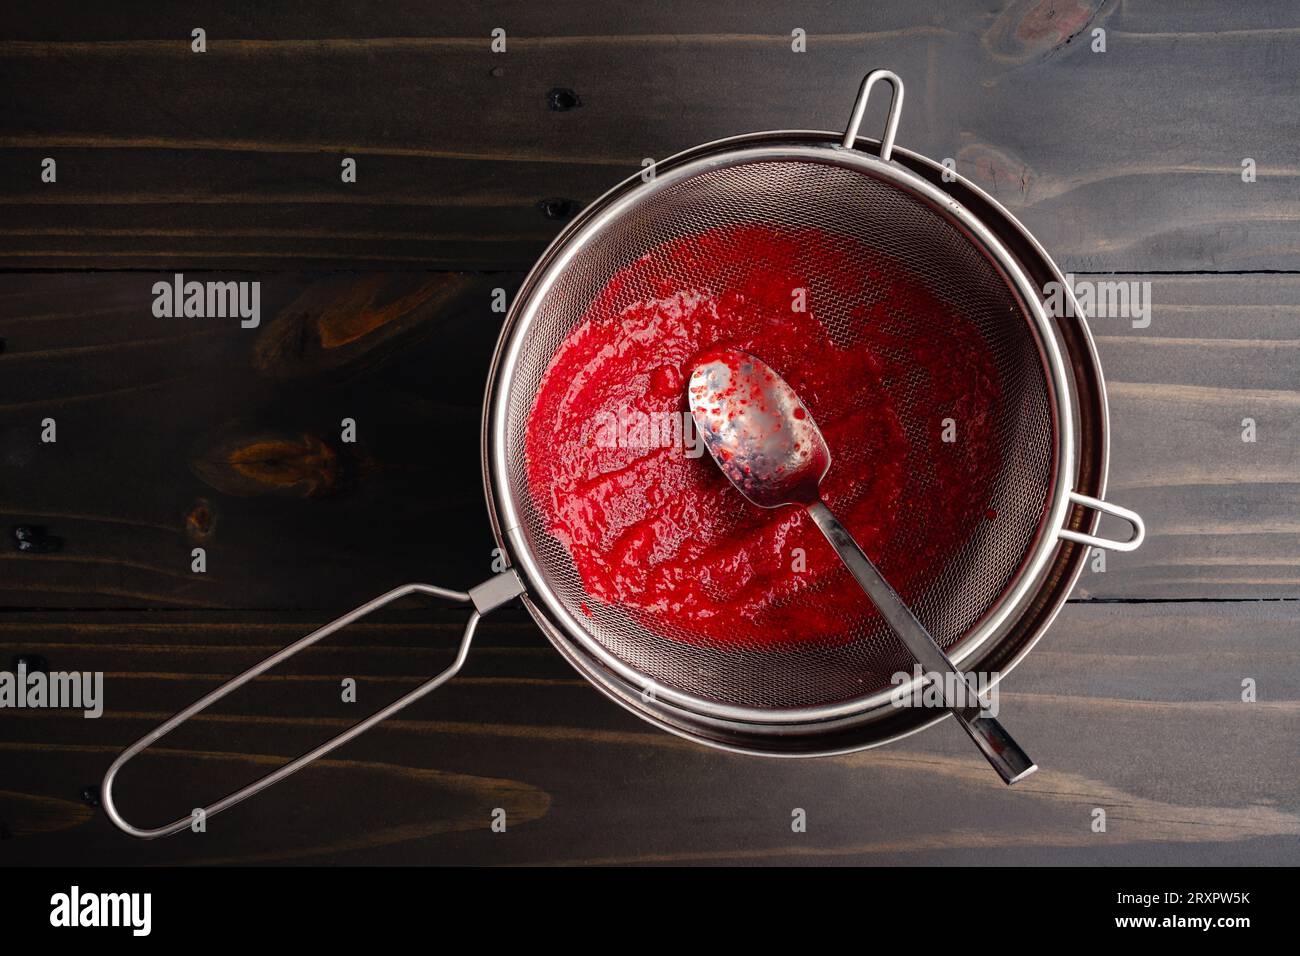 Filtrer la purée de fraises avec une crépine en maille : faire de la purée de fraises avec un petit bol de graines sur le côté Banque D'Images